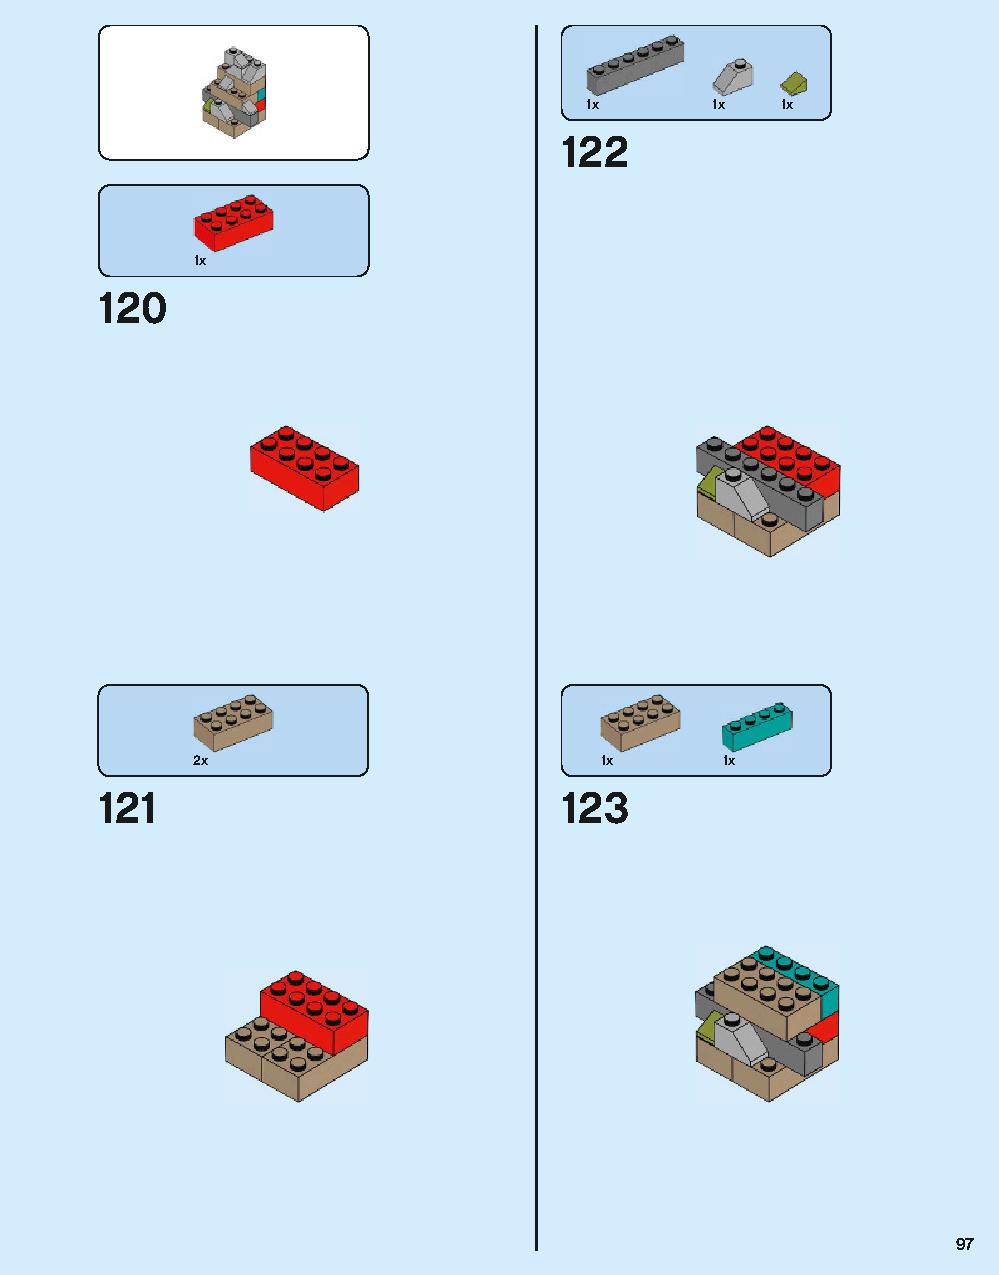 ホグワーツ城 71043 レゴの商品情報 レゴの説明書・組立方法 97 page